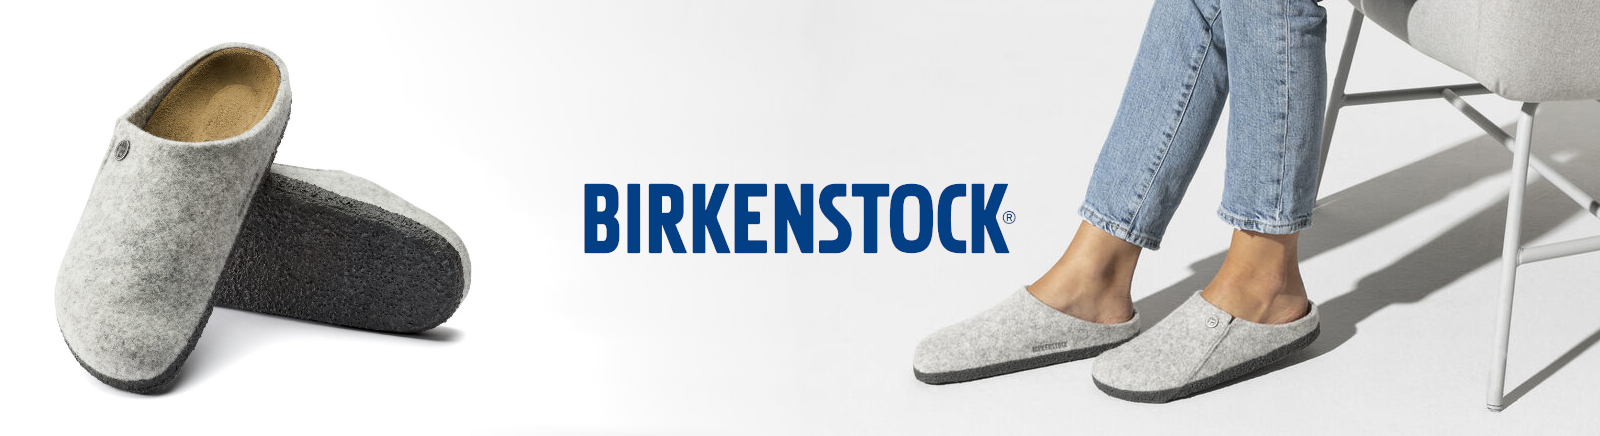 Birkenstock Herrenschuhe online entdecken im Juppen Shop